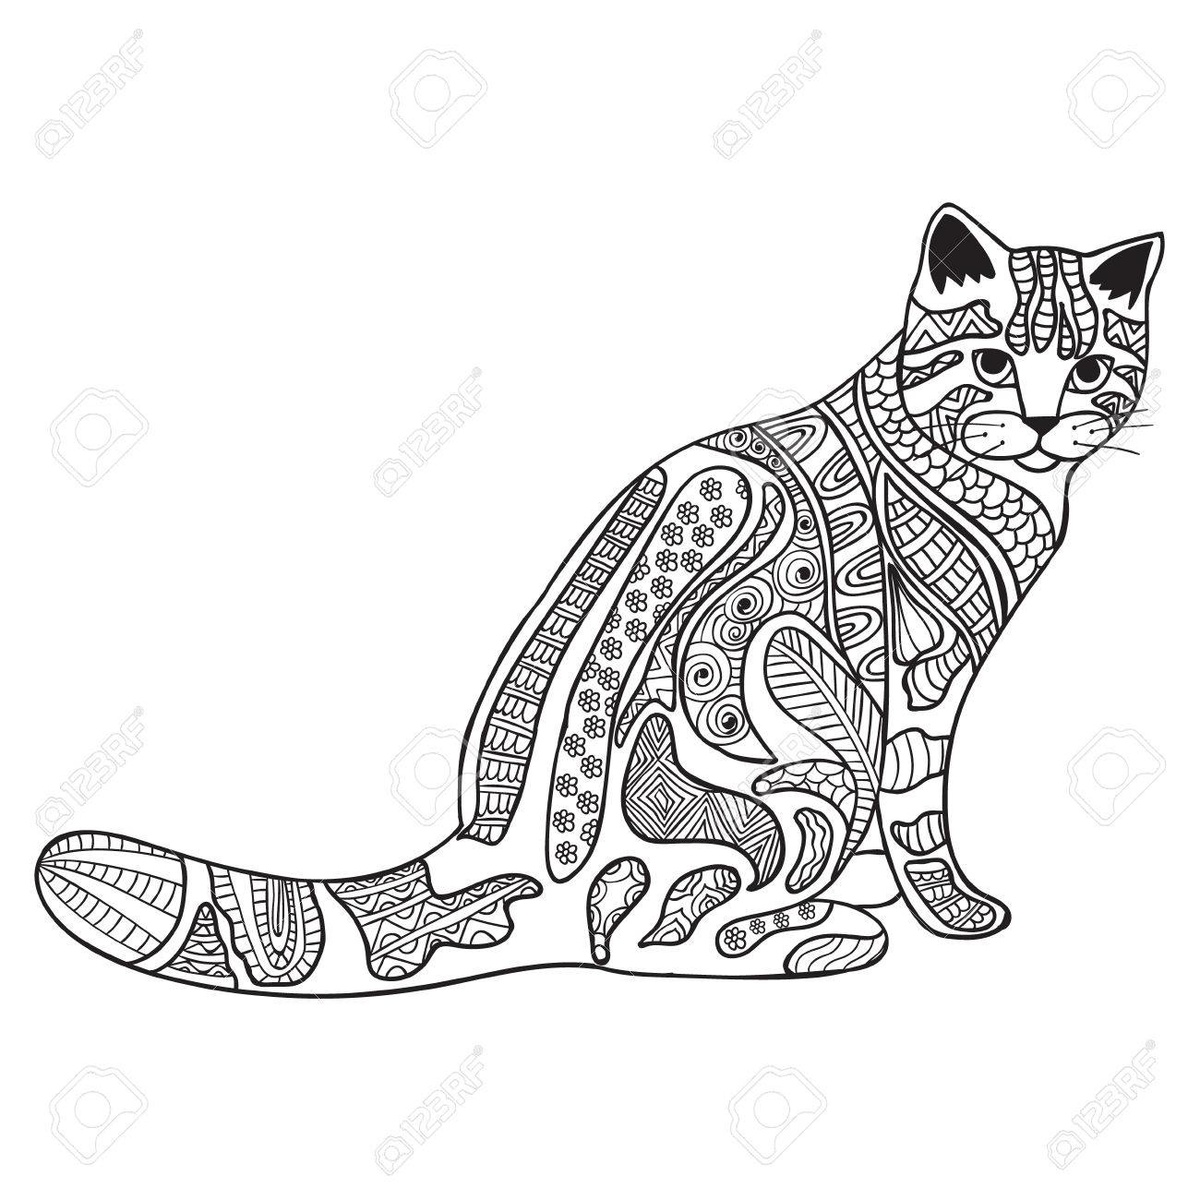 Раскраски антистресс для взрослых с изображениями кошек.     Раскраски антистресс для взрослых, снимающая стресс кототерапия в раскрасках. Милые кошки в раскрасках, использующиеся в качестве арт-терапии для взрослых.      